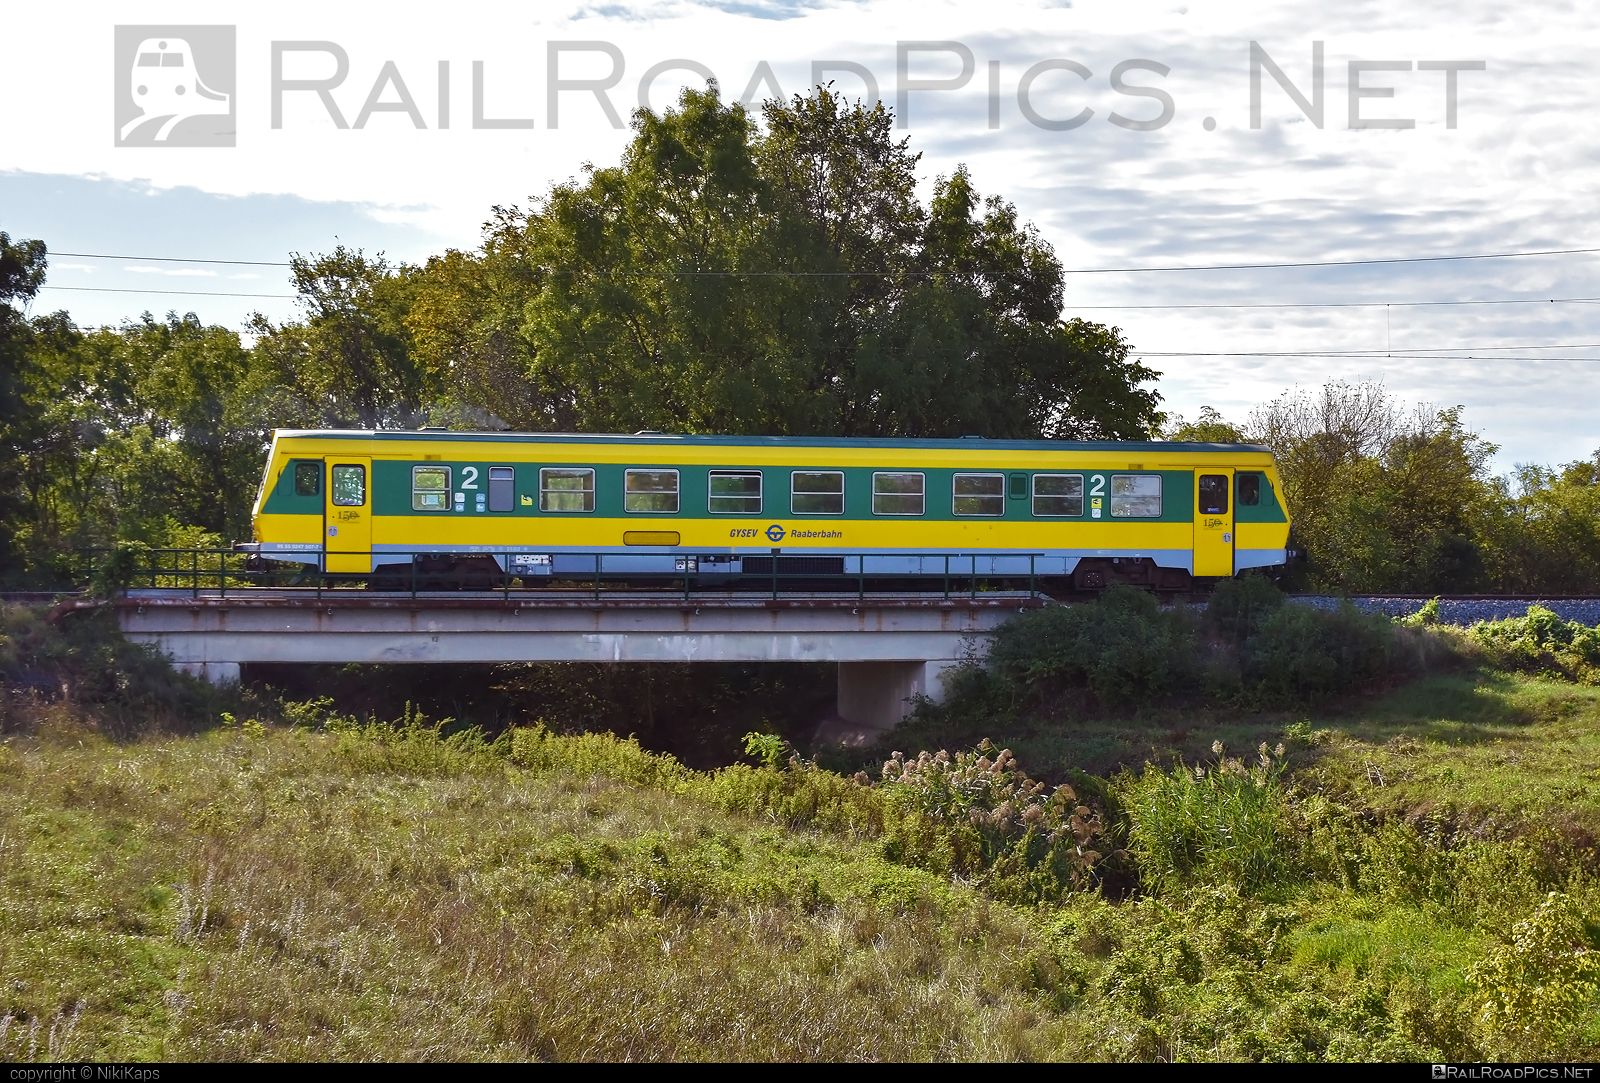 Jenbacher J3995 - 247 507 operated by GYSEV - Györ-Sopron-Ebenfurti Vasut Részvénytarsasag #bridge #gyorsopronebenfurtivasutreszvenytarsasag #gysev #jenbacher #jenbacherj3995